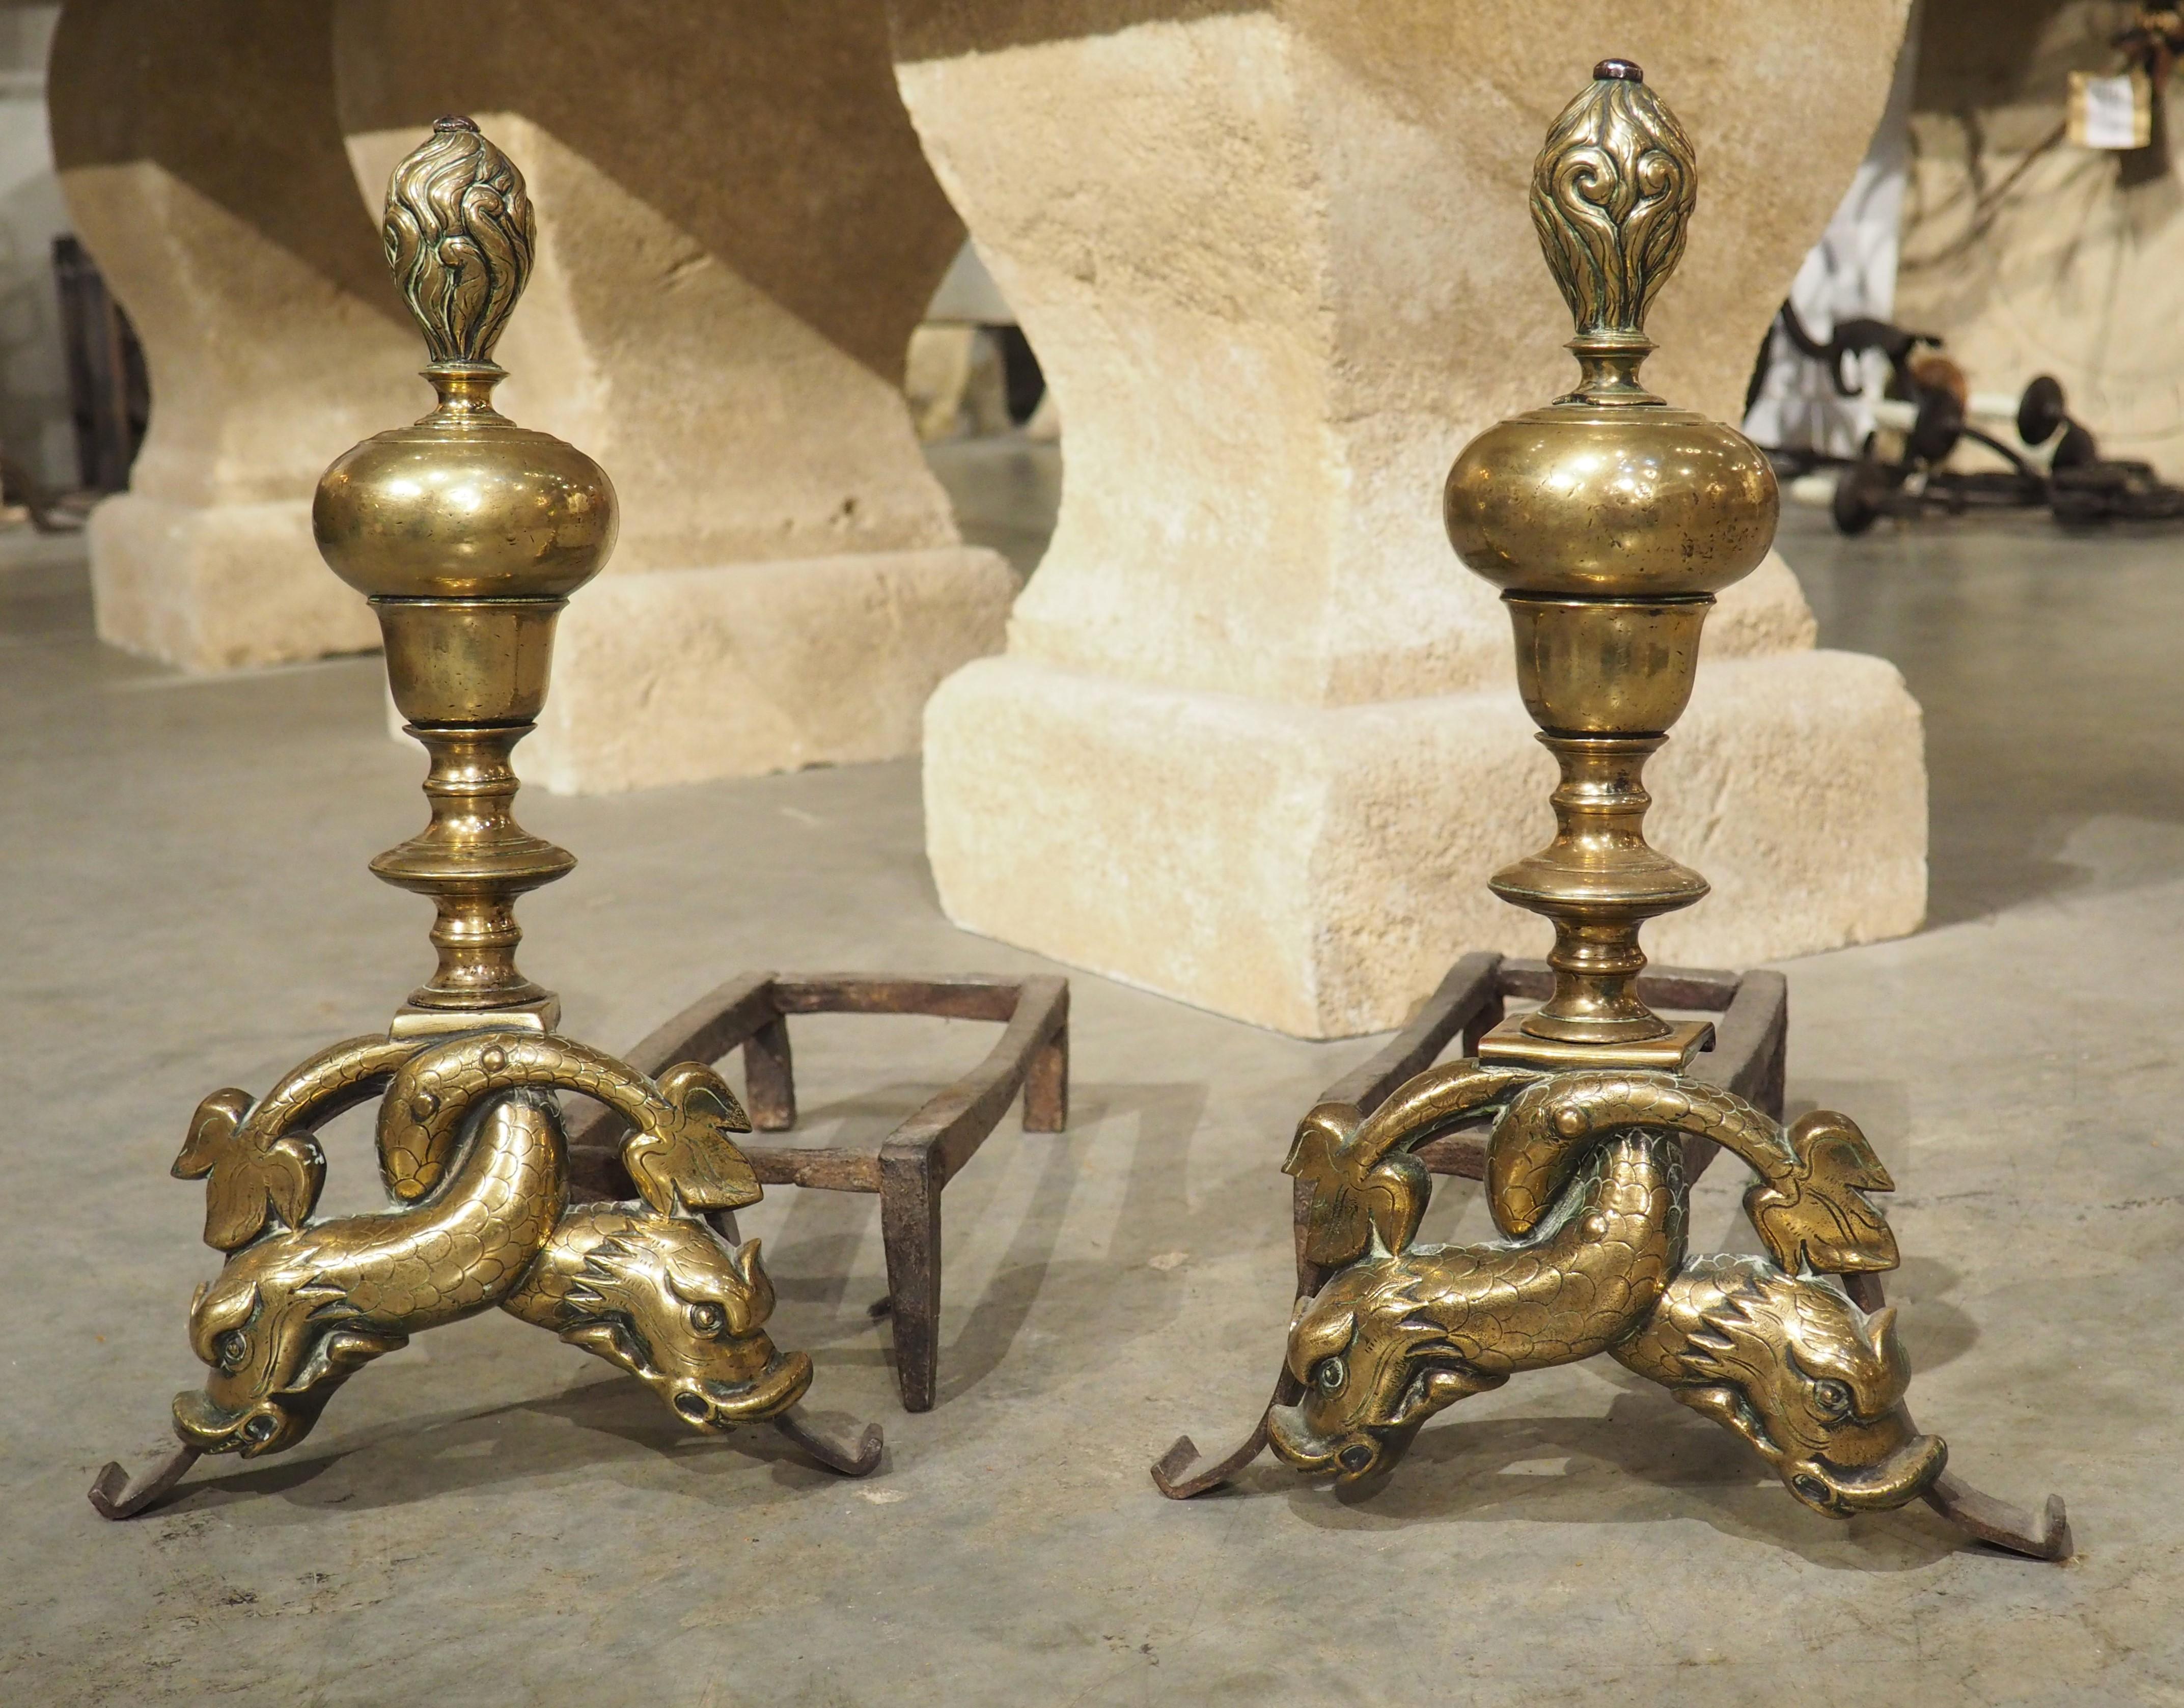 Dieses seltene Paar französischer Bronzebügeleisen stammt aus der Zeit Ludwigs XIV. (1643-1715), in der das Bügeleisen in Frankreich seine größte künstlerische Entwicklung erlebte. Die Motive sind ineinander verschlungene Delphine mit